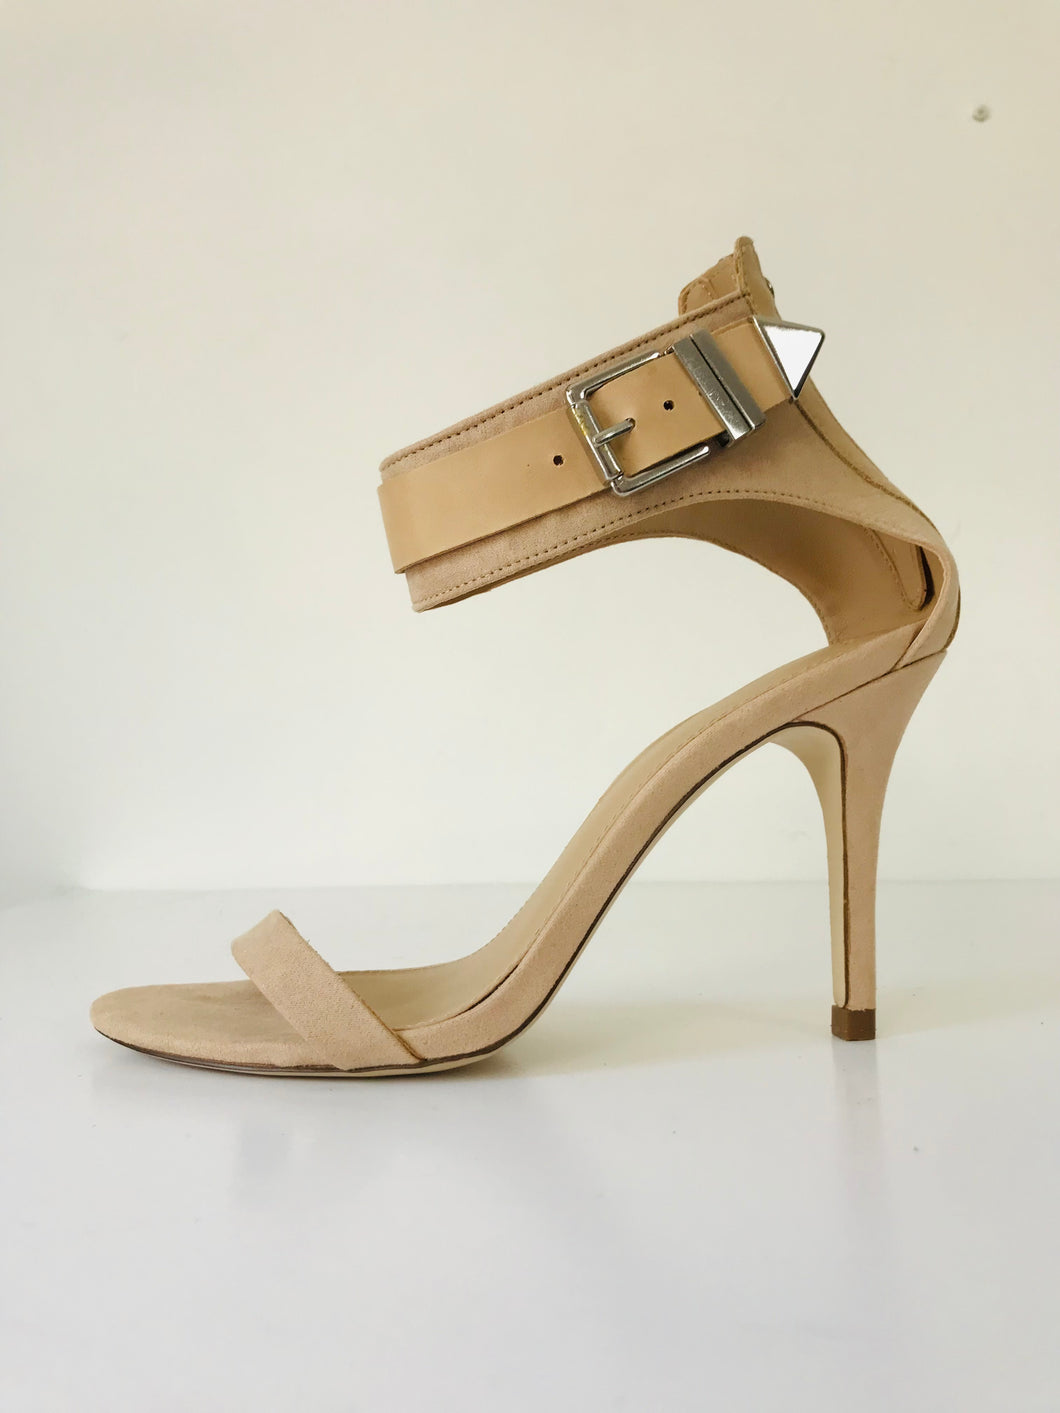 Zara Women's Heeled Sandals | 38 UK5 | Beige